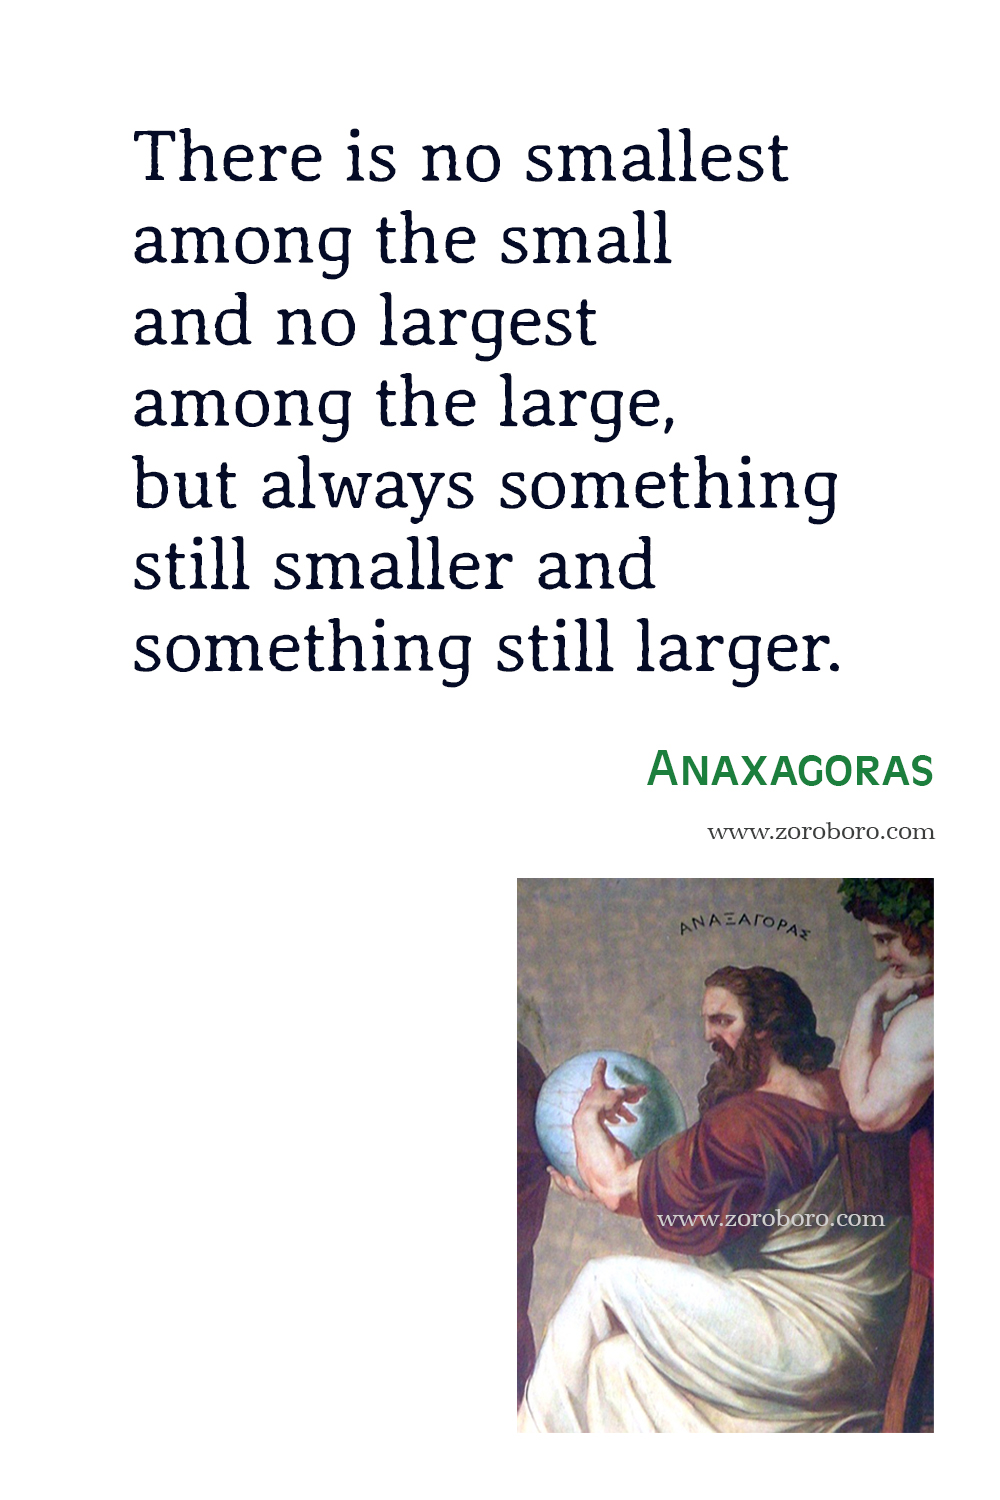 Anaxagoras Quotes, Anaxagoras Philosophy, Anaxagoras Wallpaper, Anaxagoras Image, Anaxagoras Quotes.